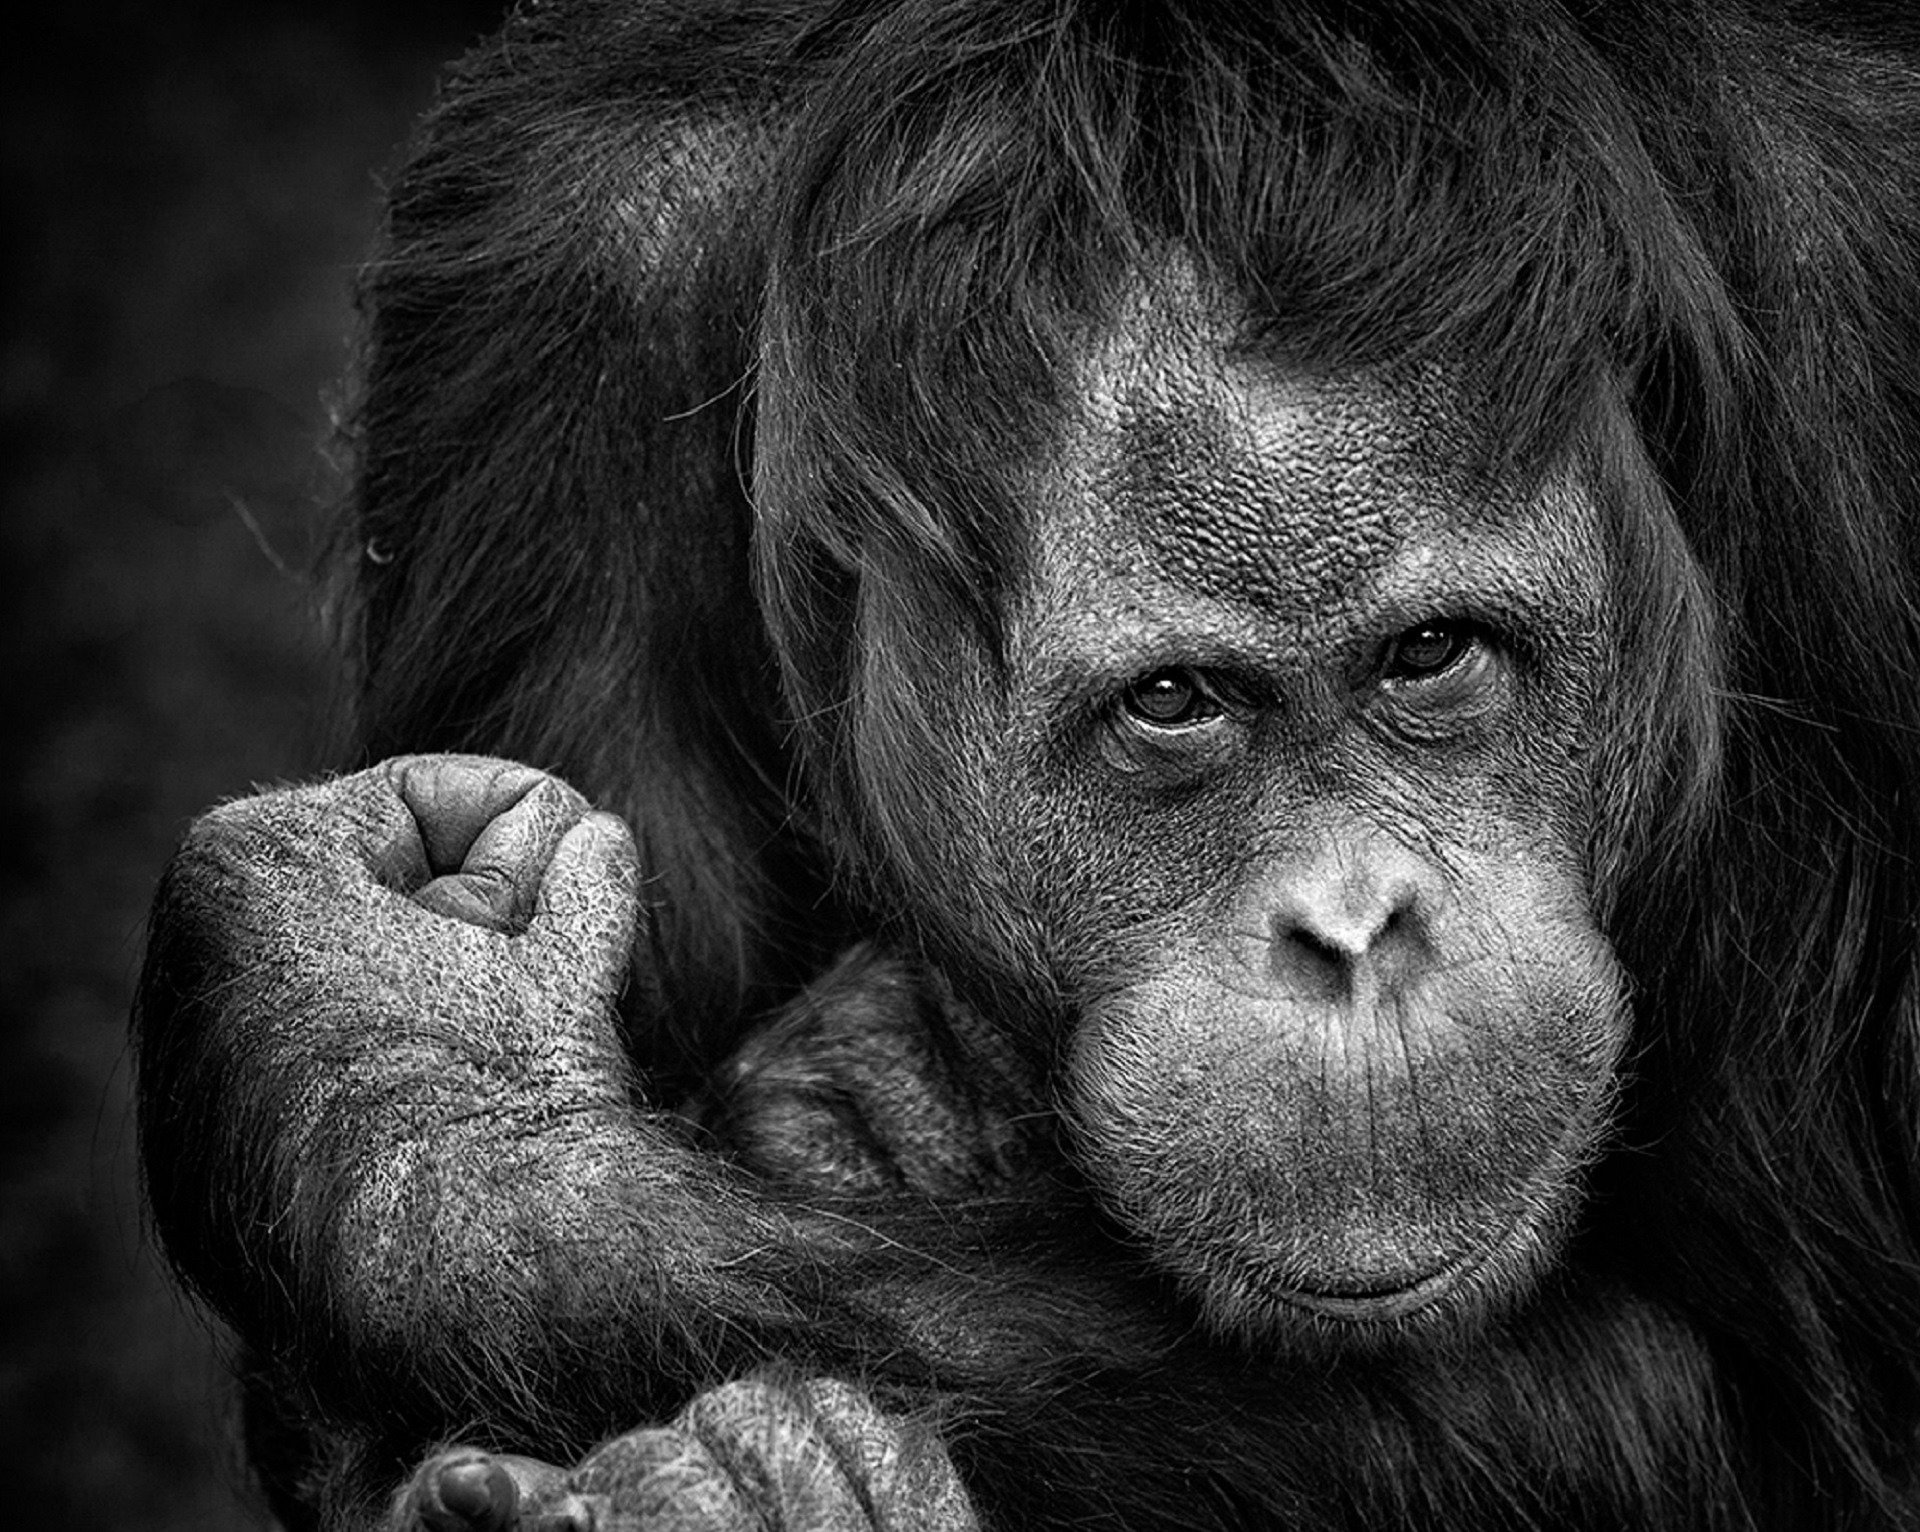 white chimpanzee black gorilla